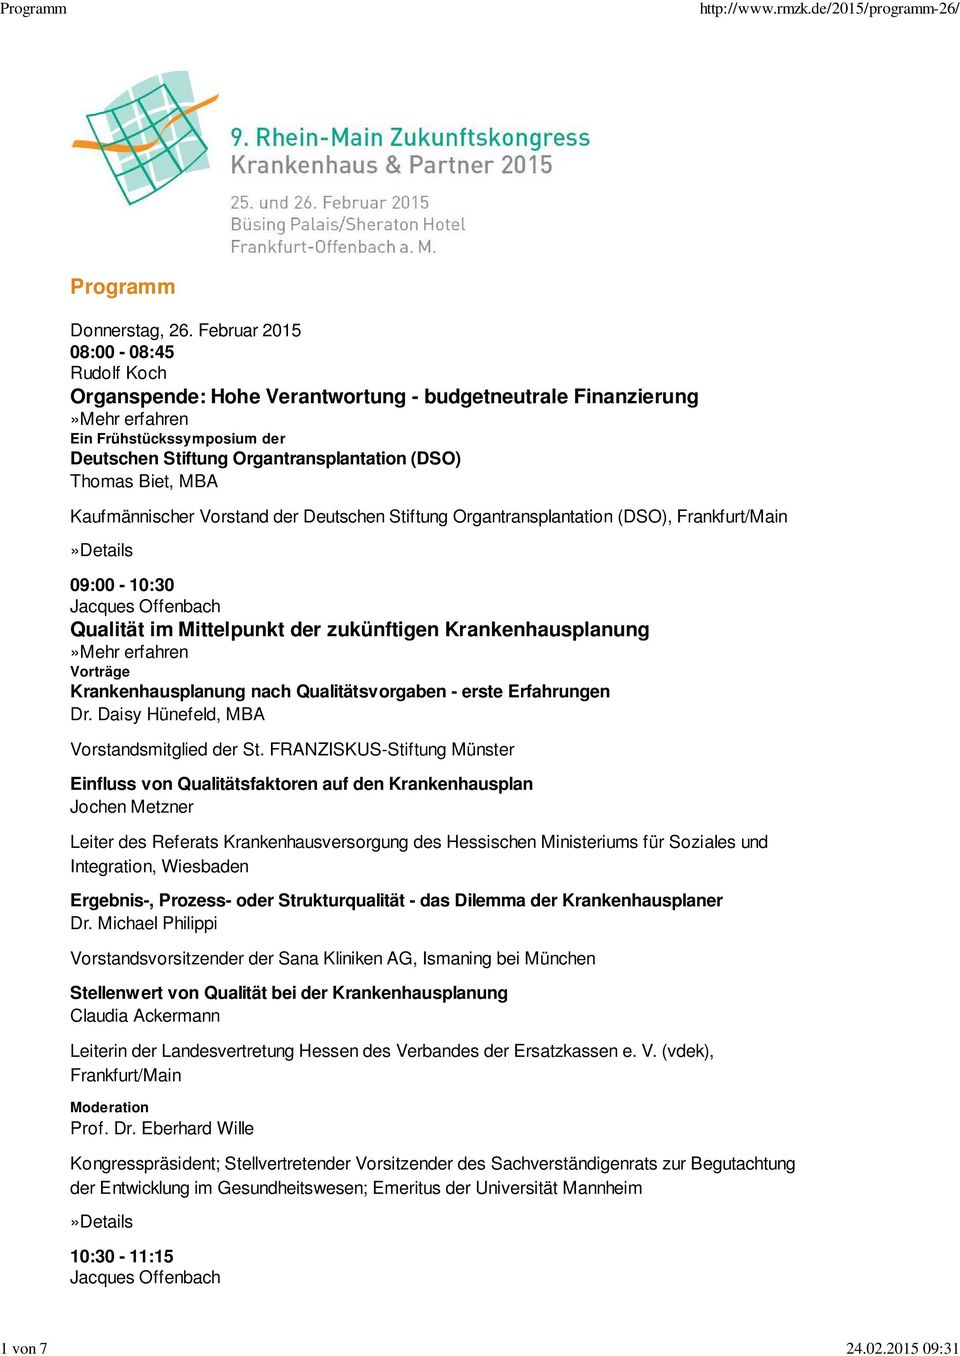 Kaufmännischer Vorstand der Deutschen Stiftung Organtransplantation (DSO), Frankfurt/Main 09:00-10:30 Qualität im Mittelpunkt der zukünftigen Krankenhausplanung Krankenhausplanung nach